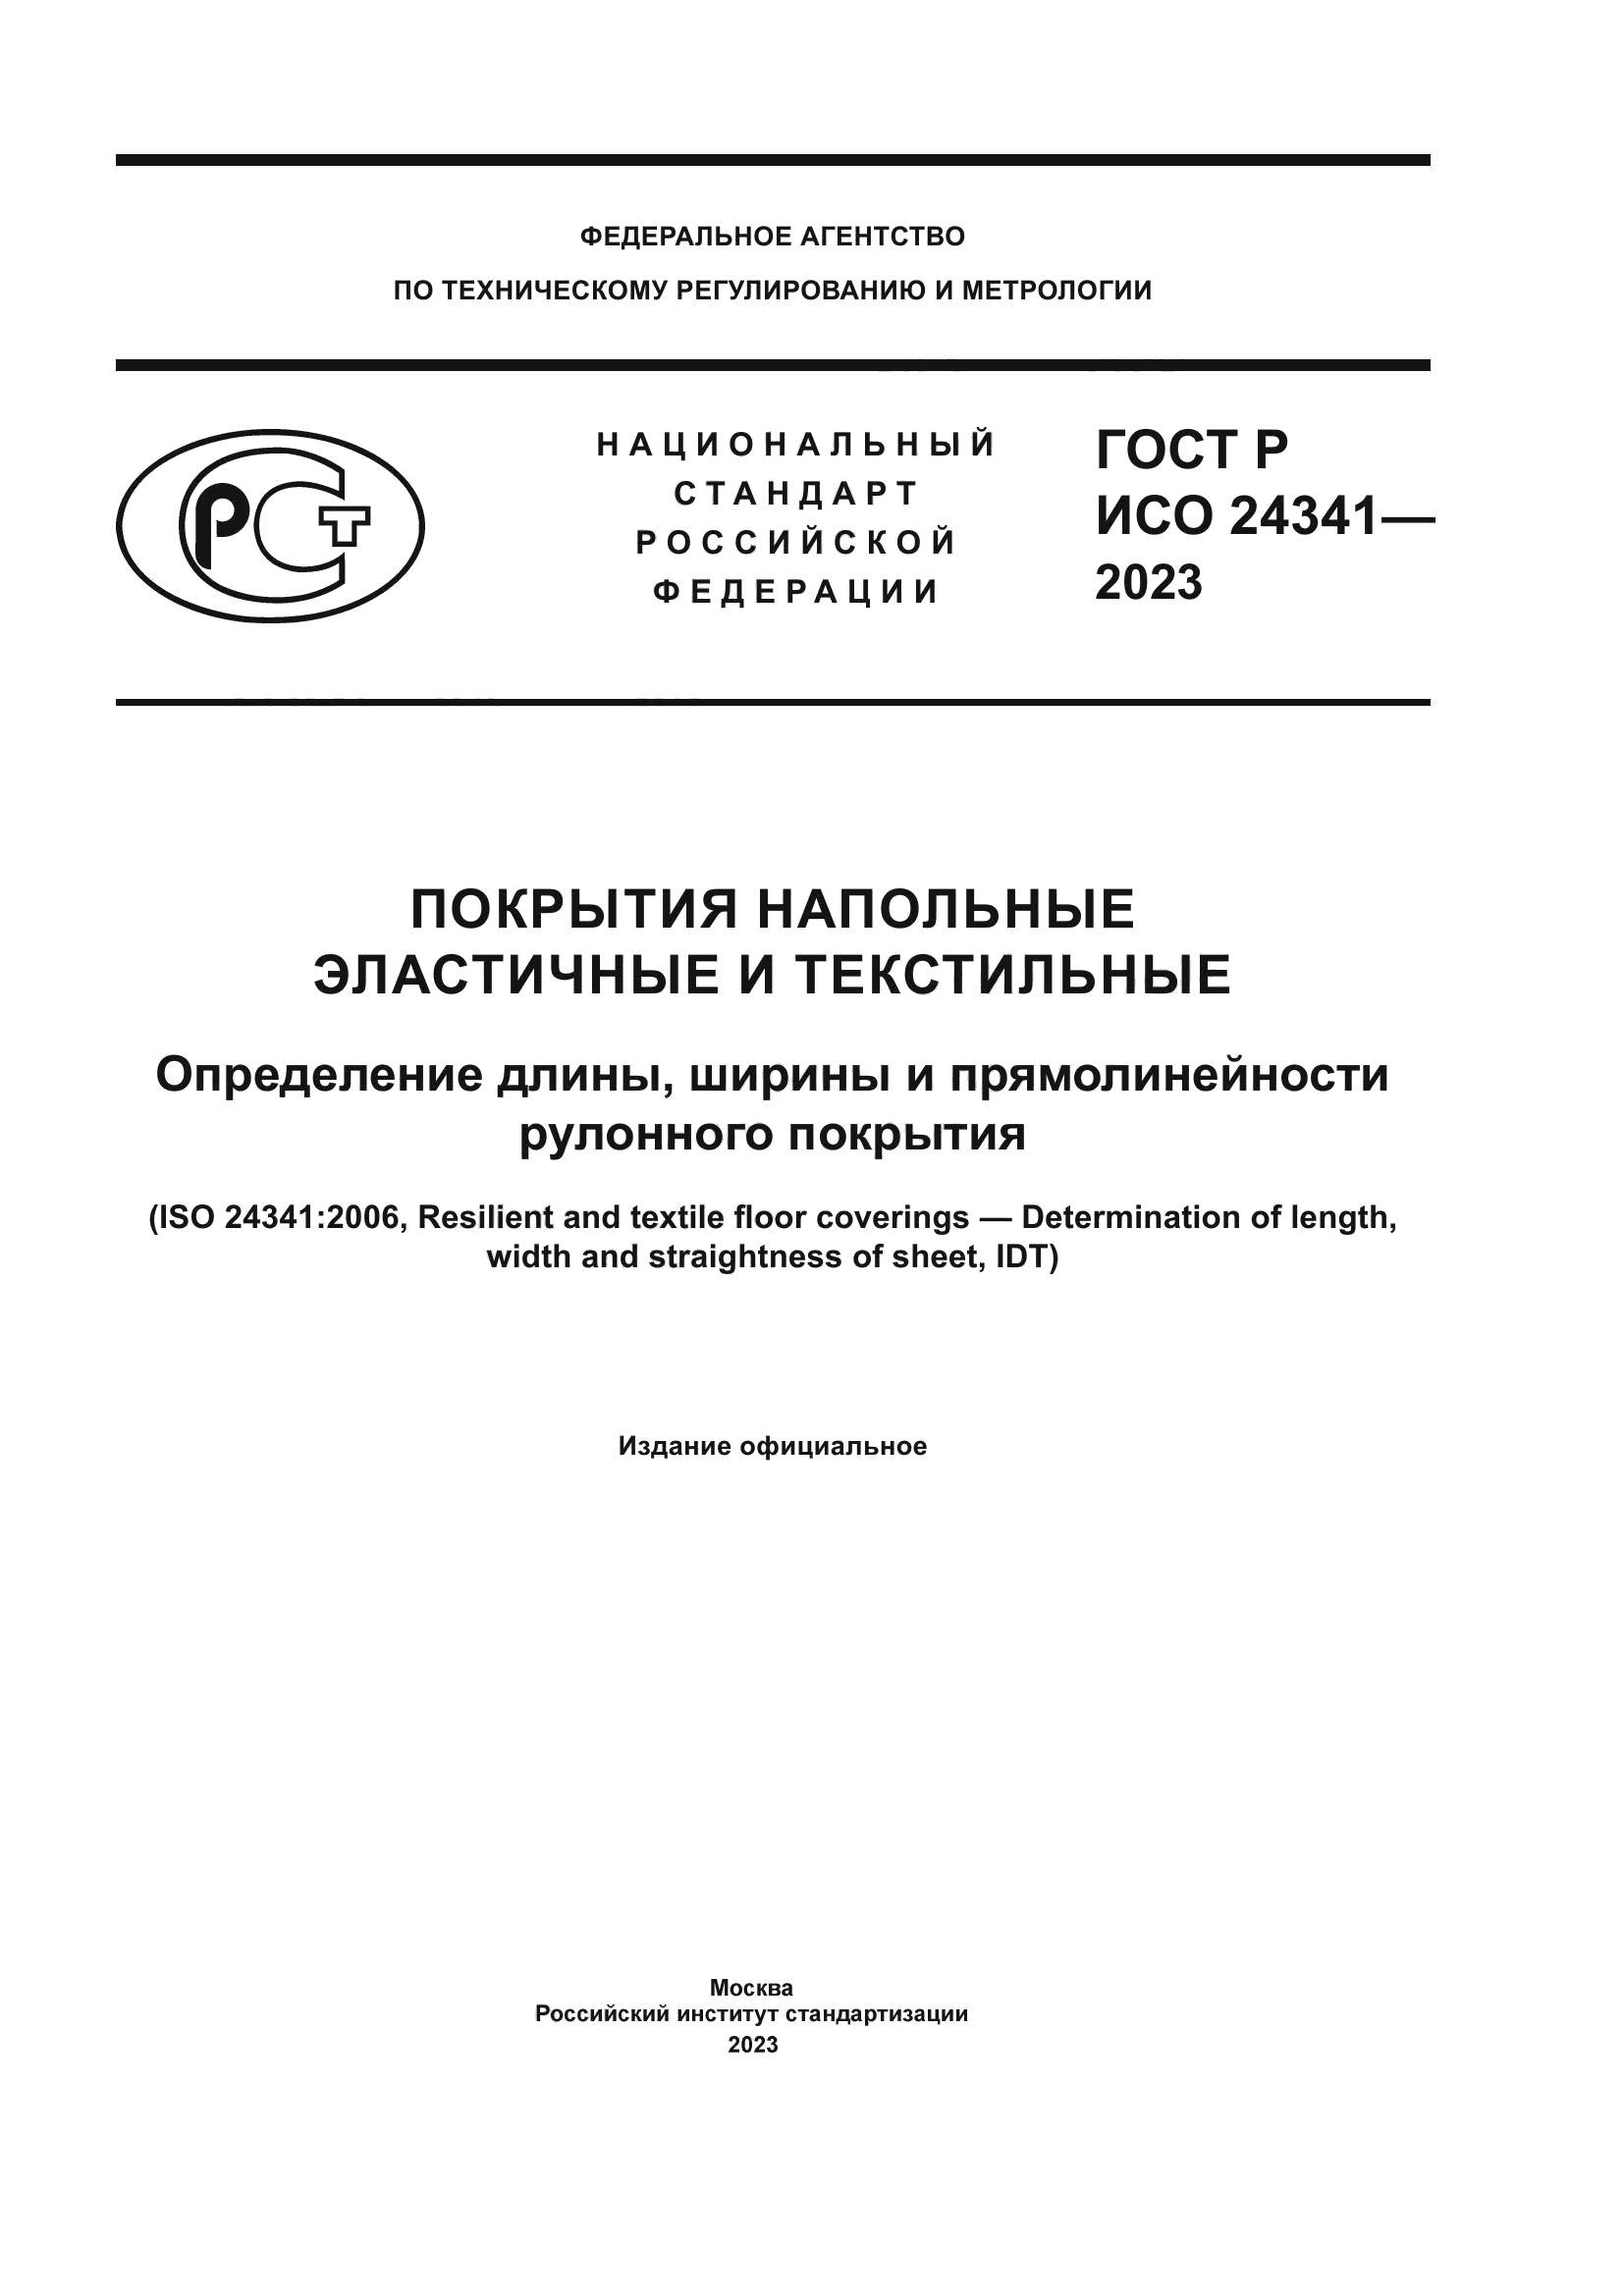 ГОСТ Р ИСО 24341-2023